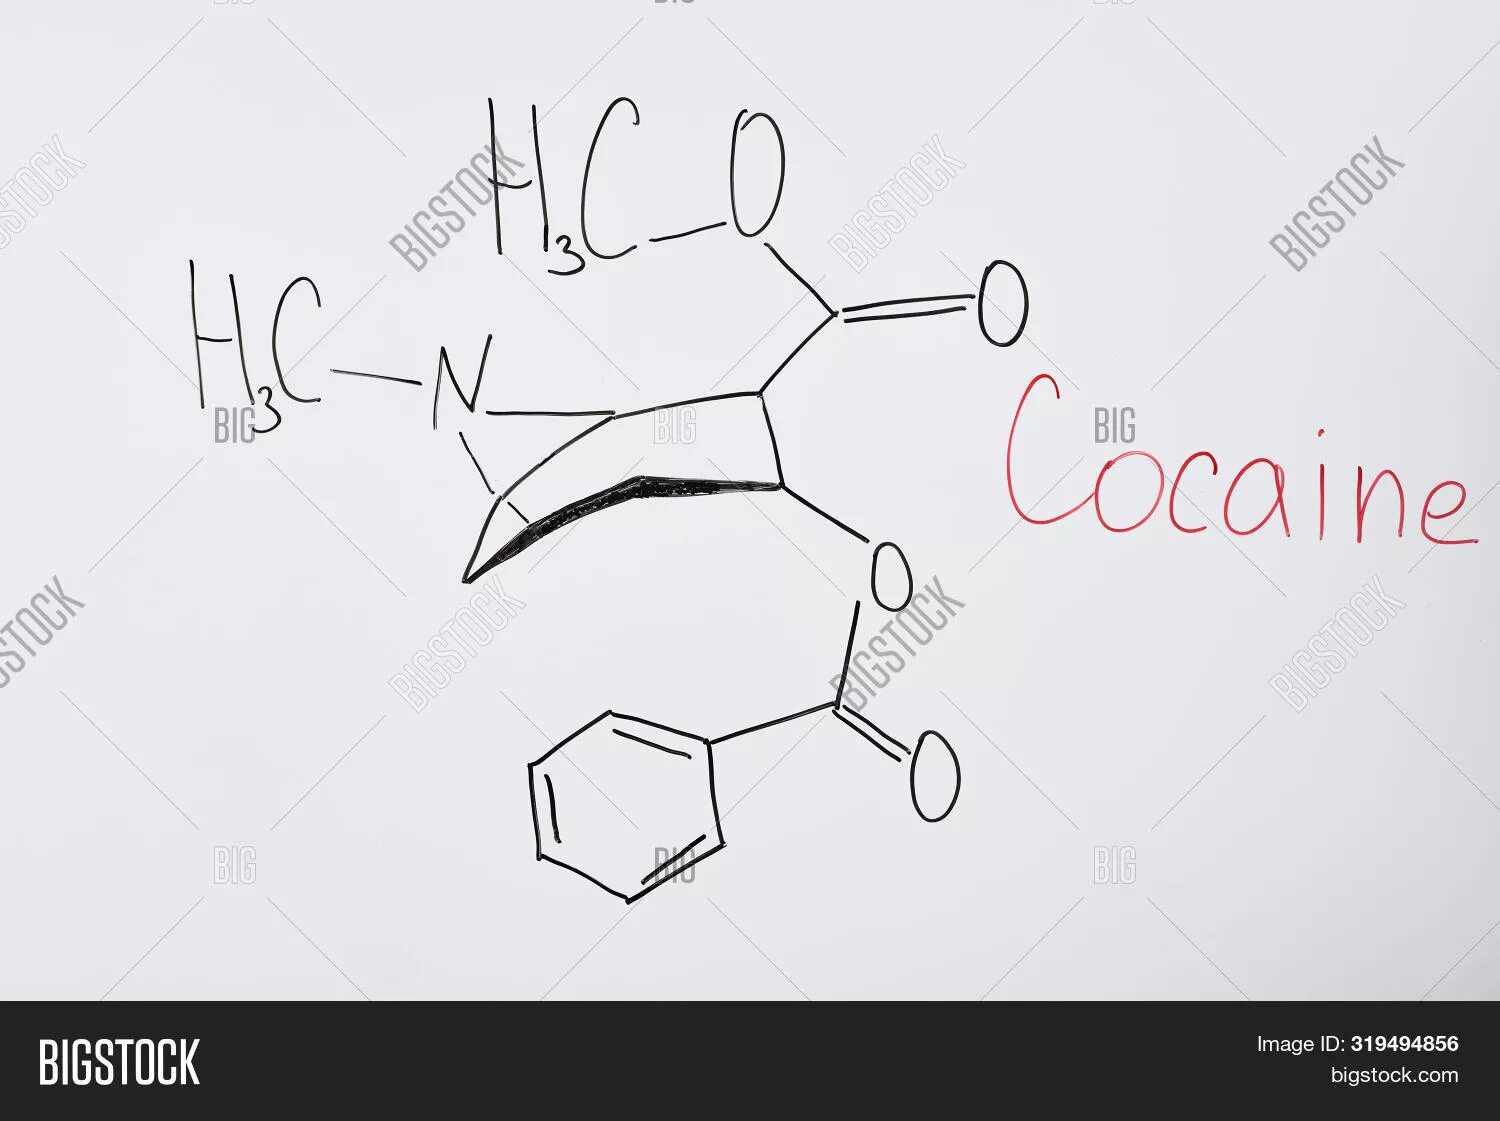 Для какого рисунка формула. Химическая формула кокаина. Химические формулы на белом фоне. Формула кокаина рисунки. Химическая формула какашек.